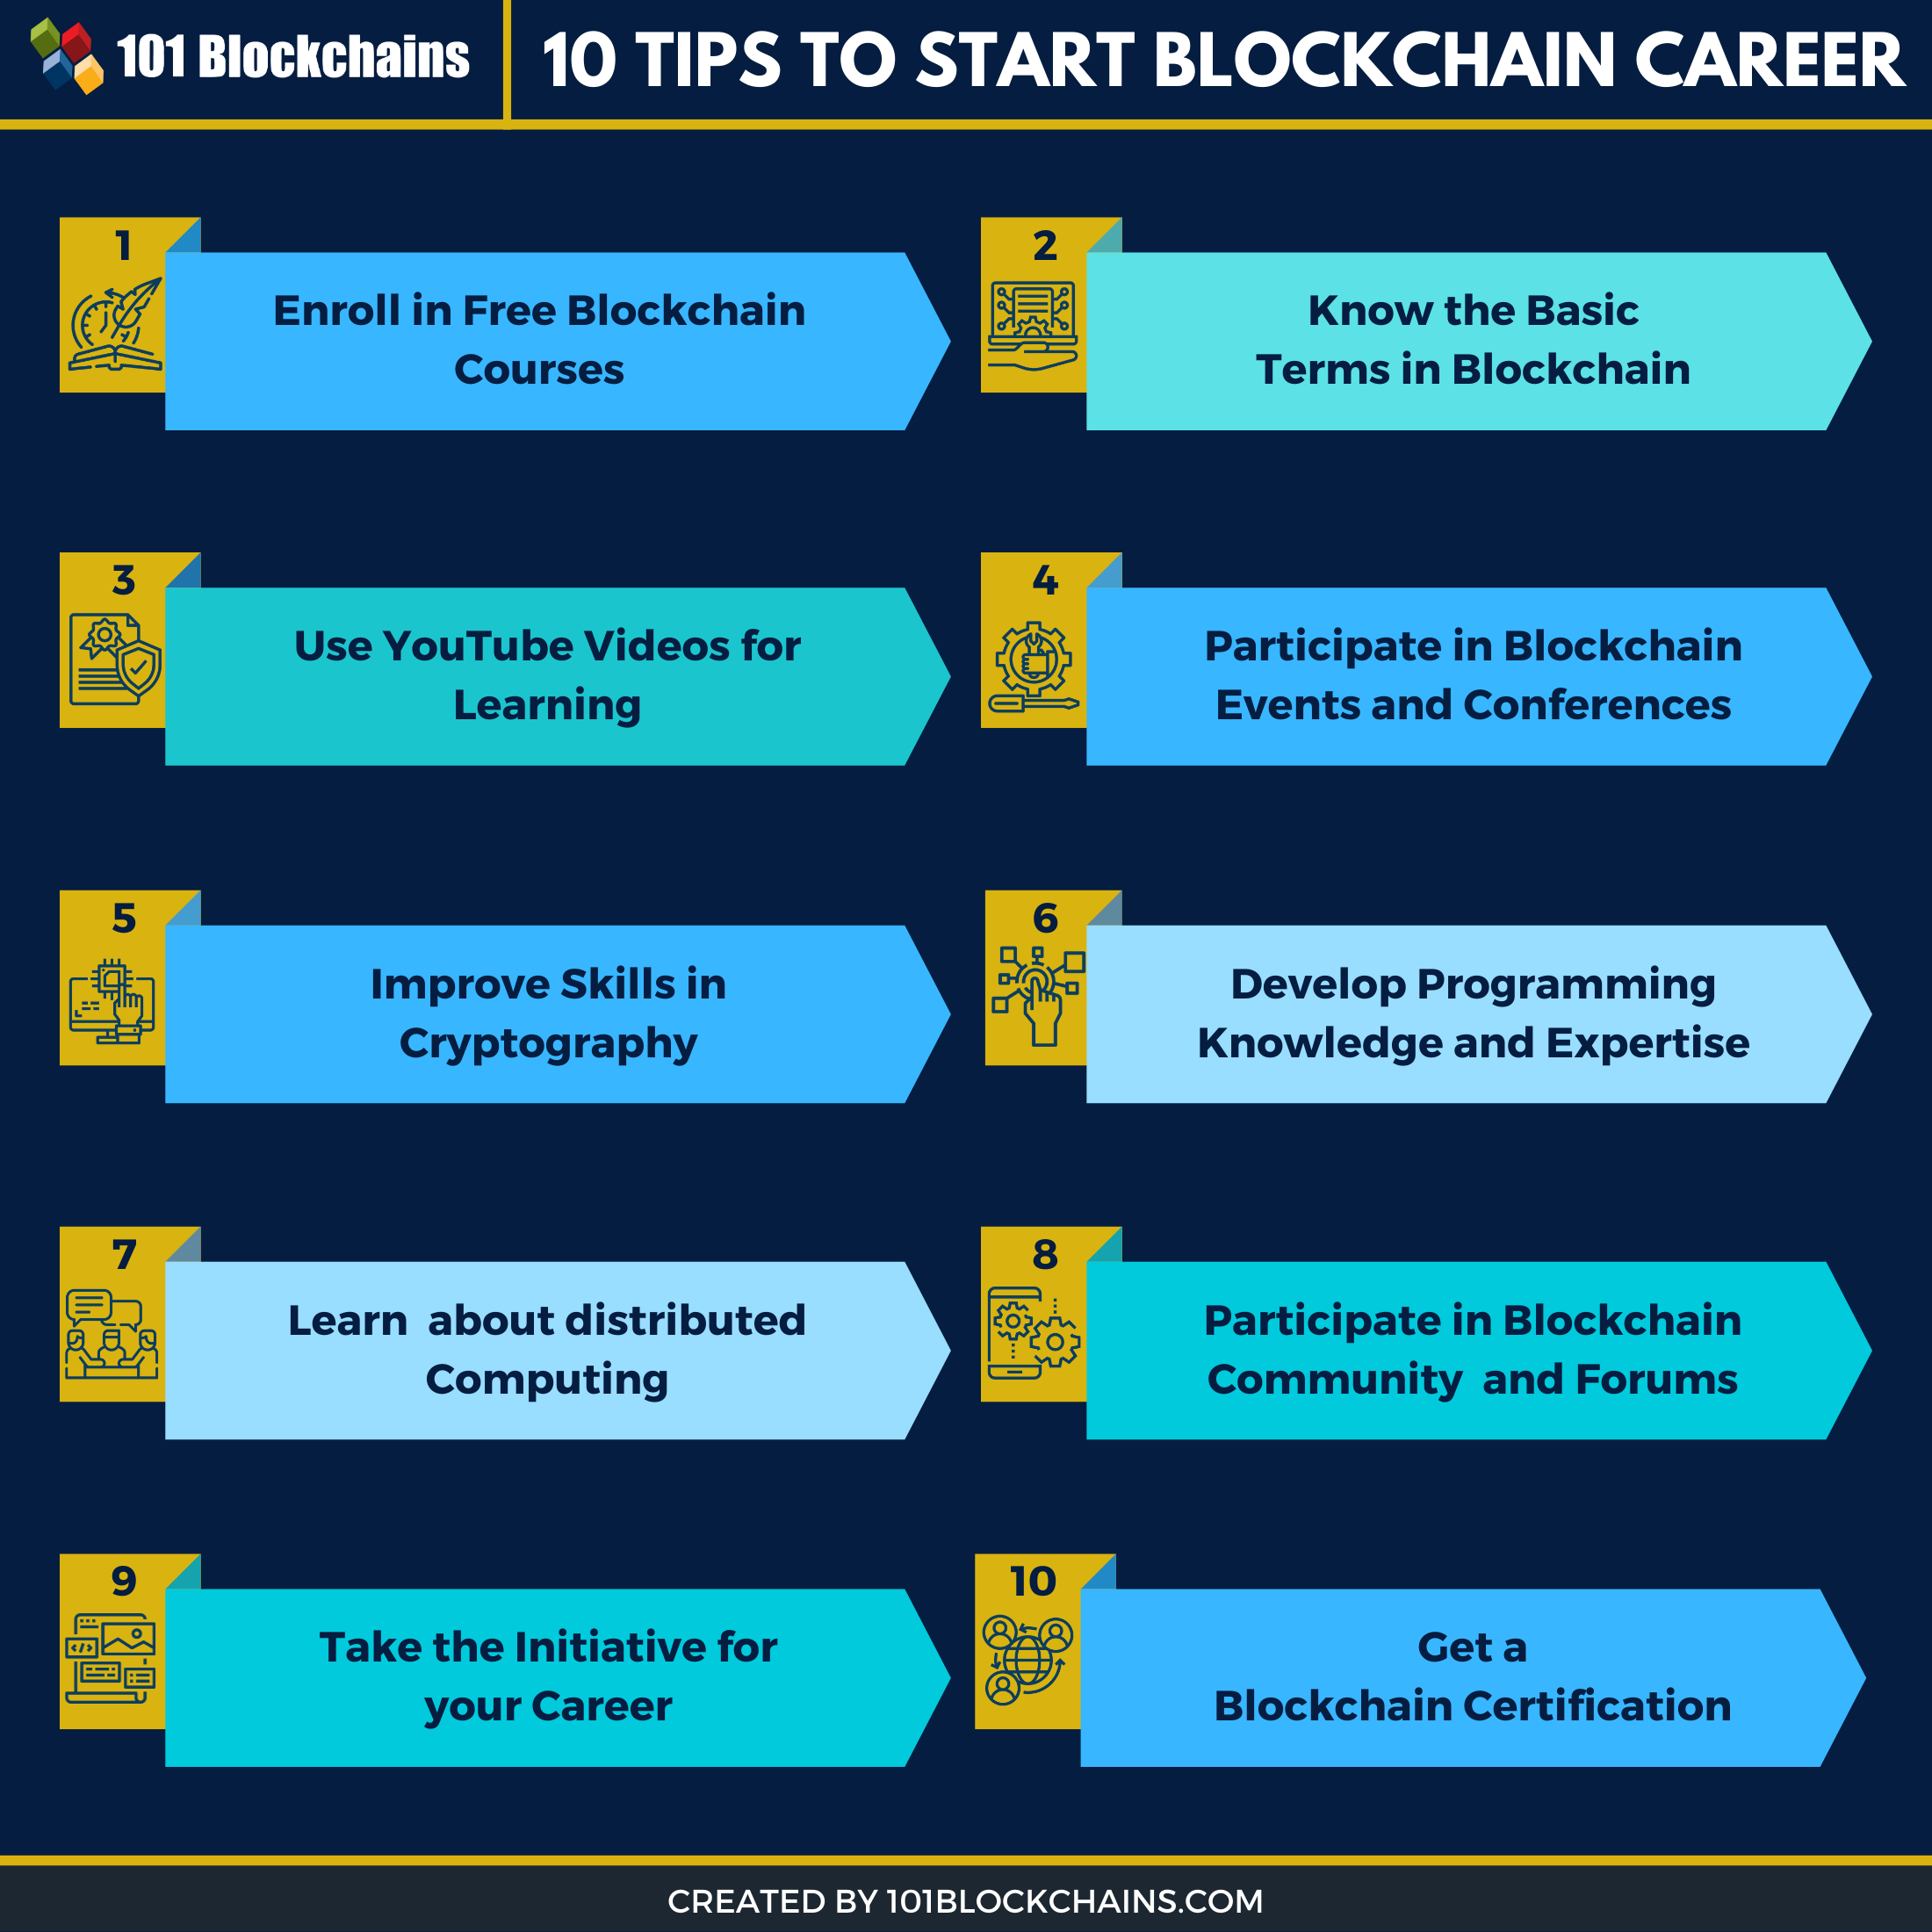 Tips to Start Blockchain Career